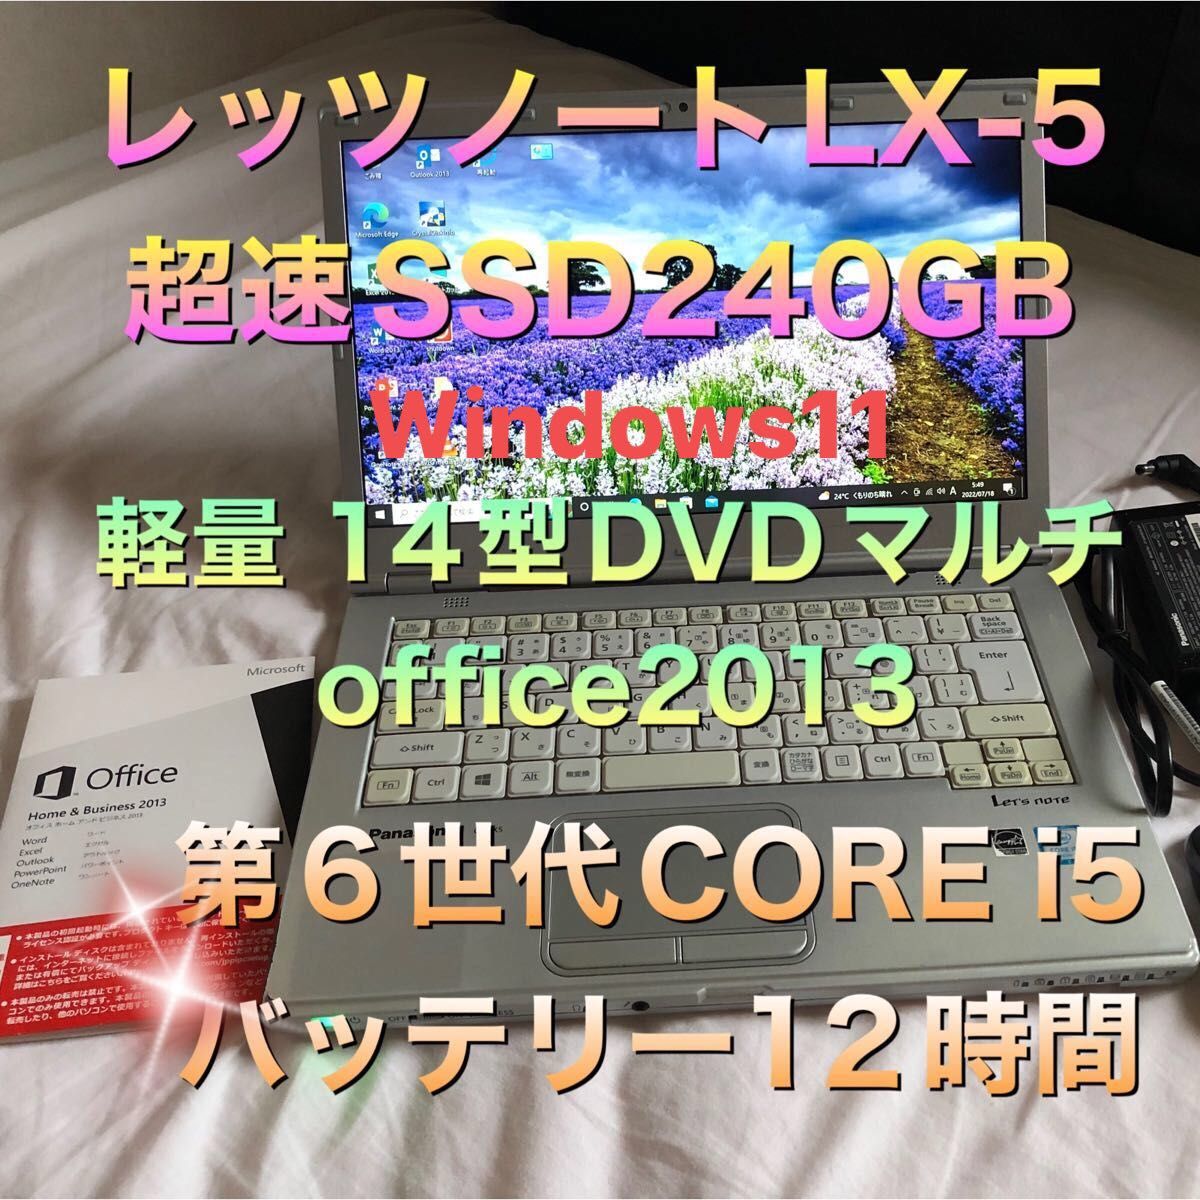 レッツノート LX5 office365超速SSD 240GB 4GBメモリ‼️-